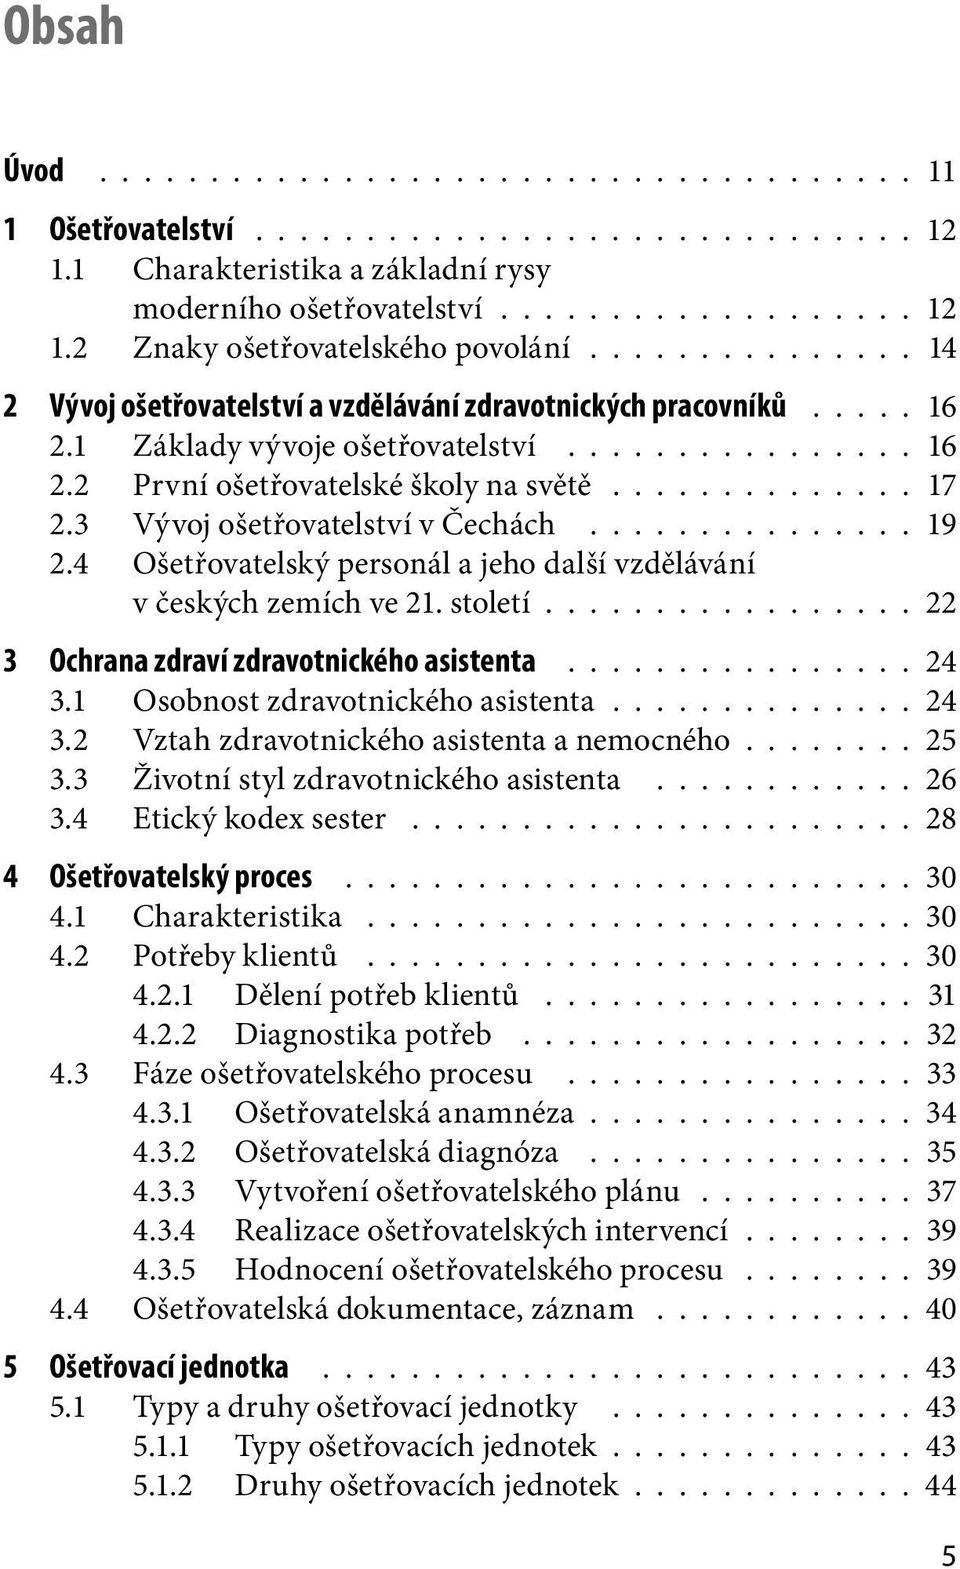 3 Vývoj ošetřovatelství v Čechách............... 19 2.4 Ošetřovatelský personál a jeho další vzdělávání v českých zemích ve 21. století................. 22 3 Ochrana zdraví zdravotnického asistenta.